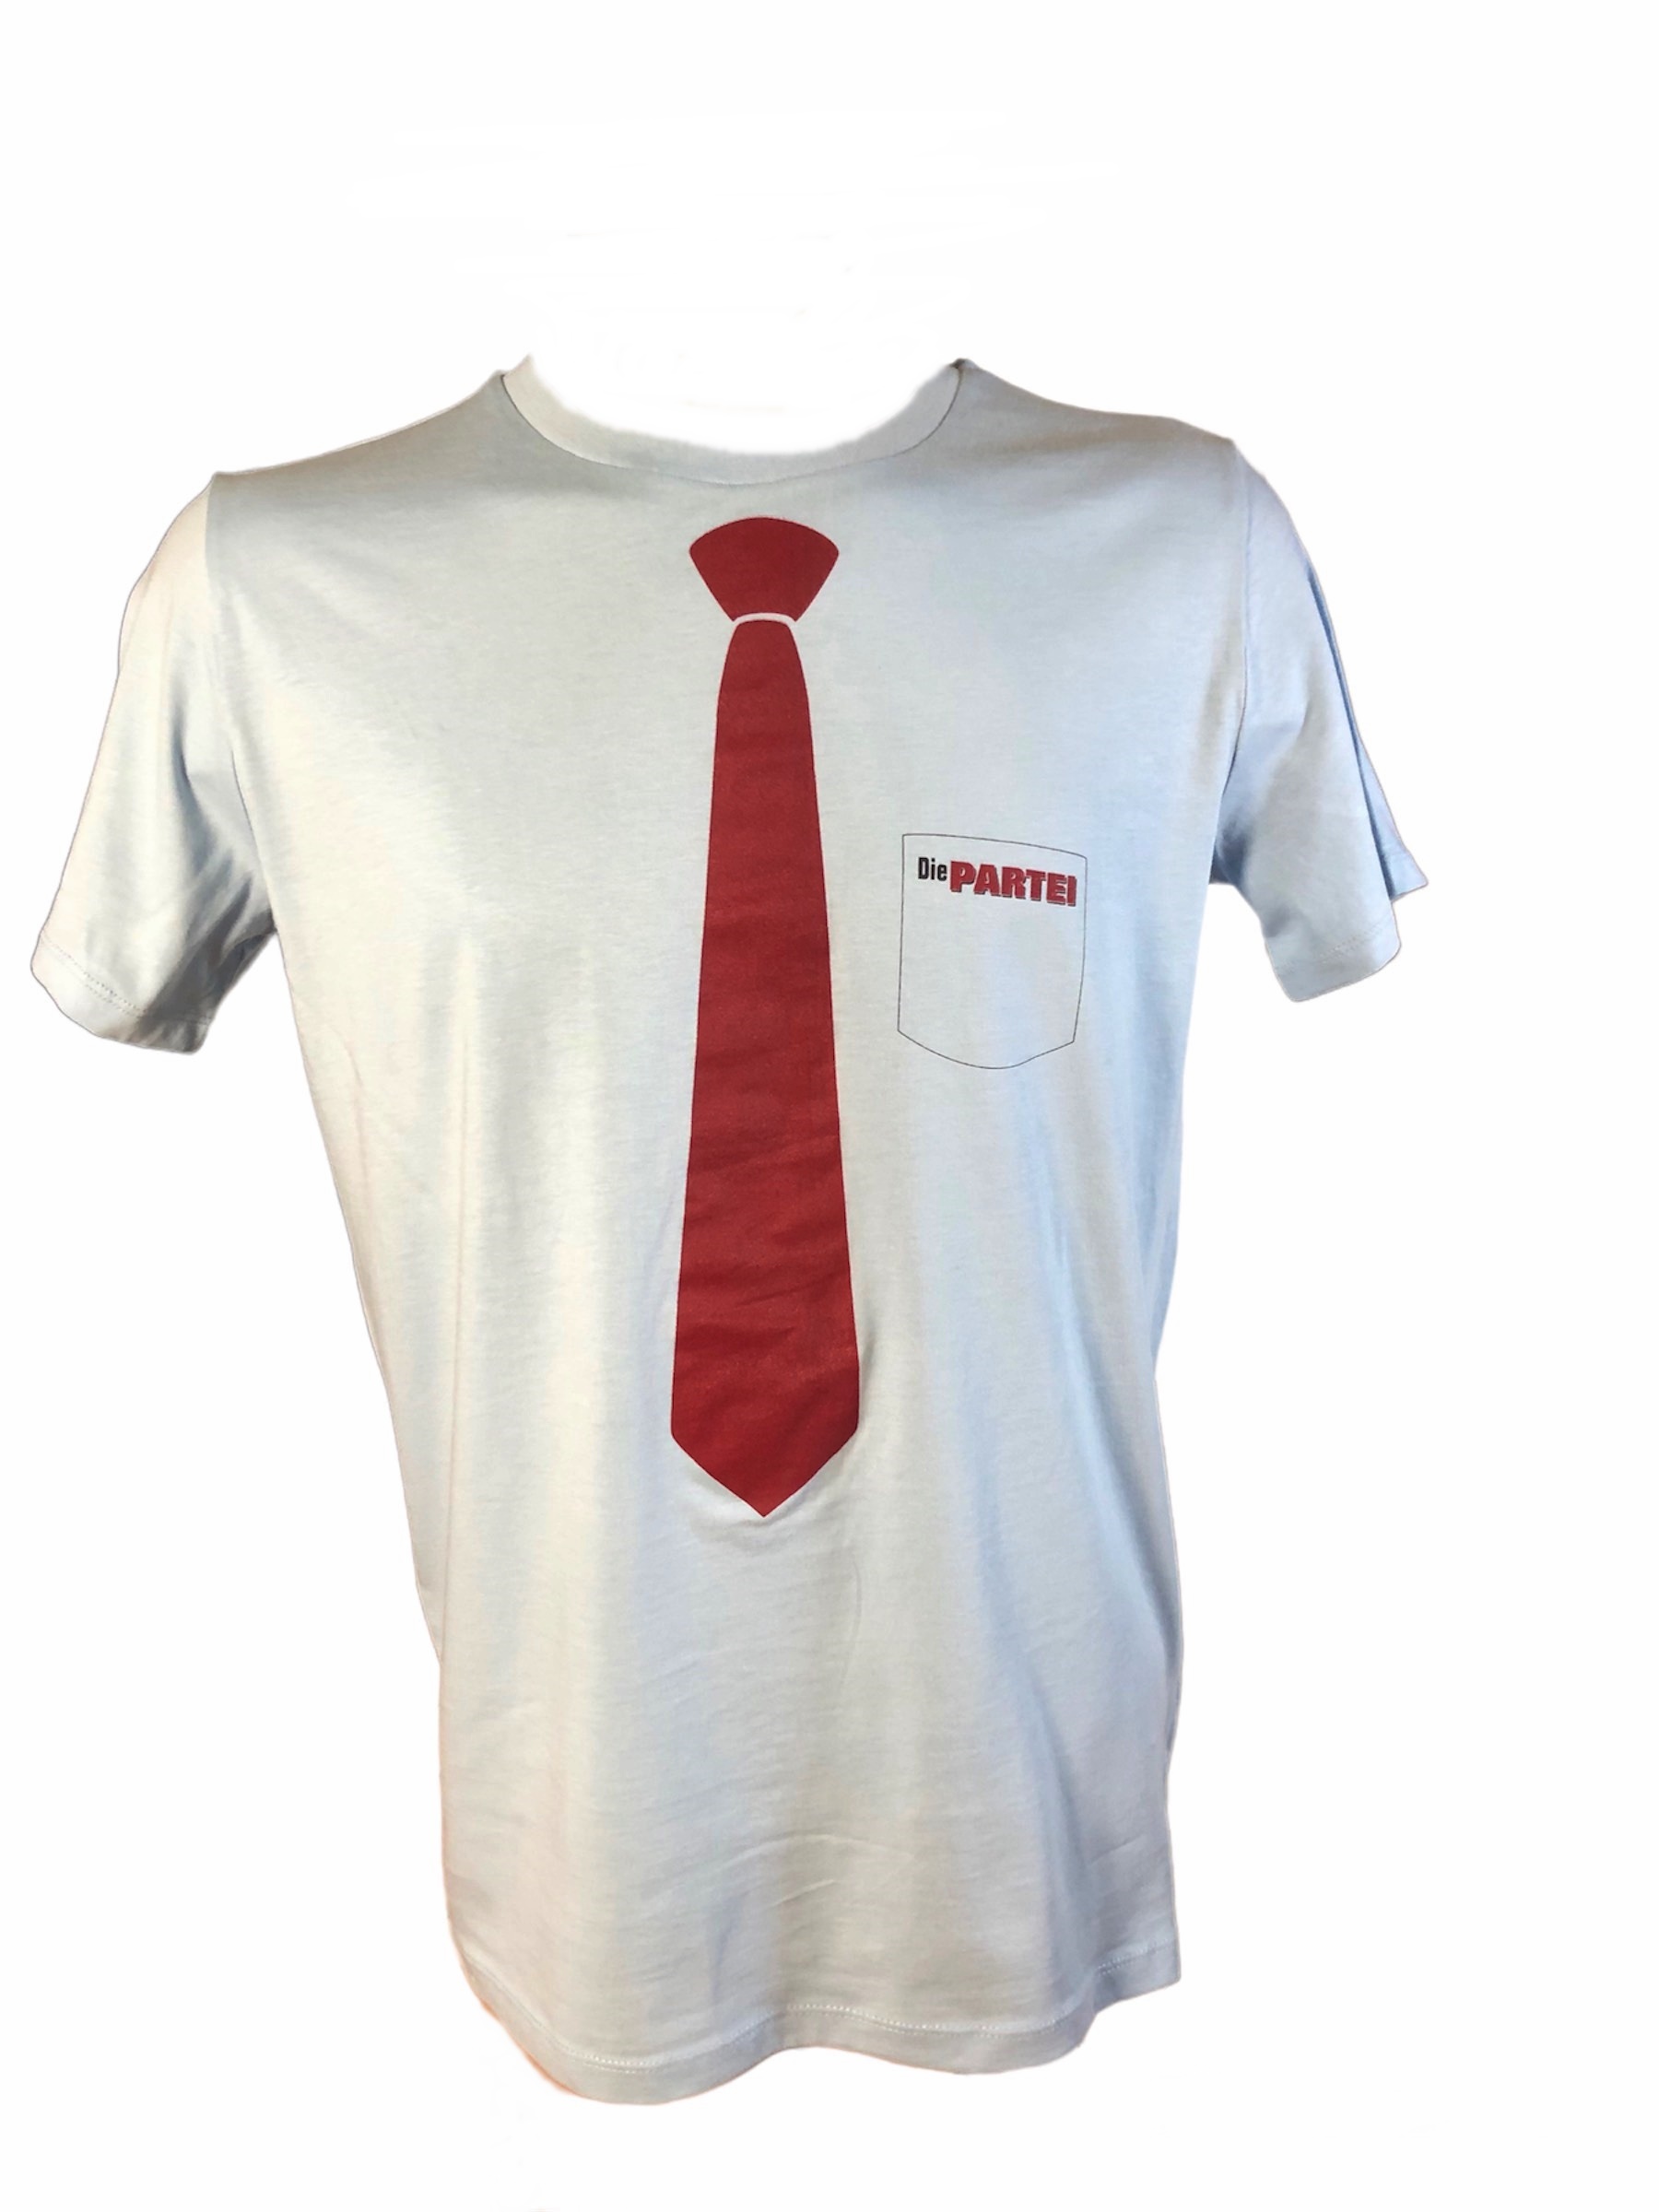 PARTEI-Shirt: Krawatte